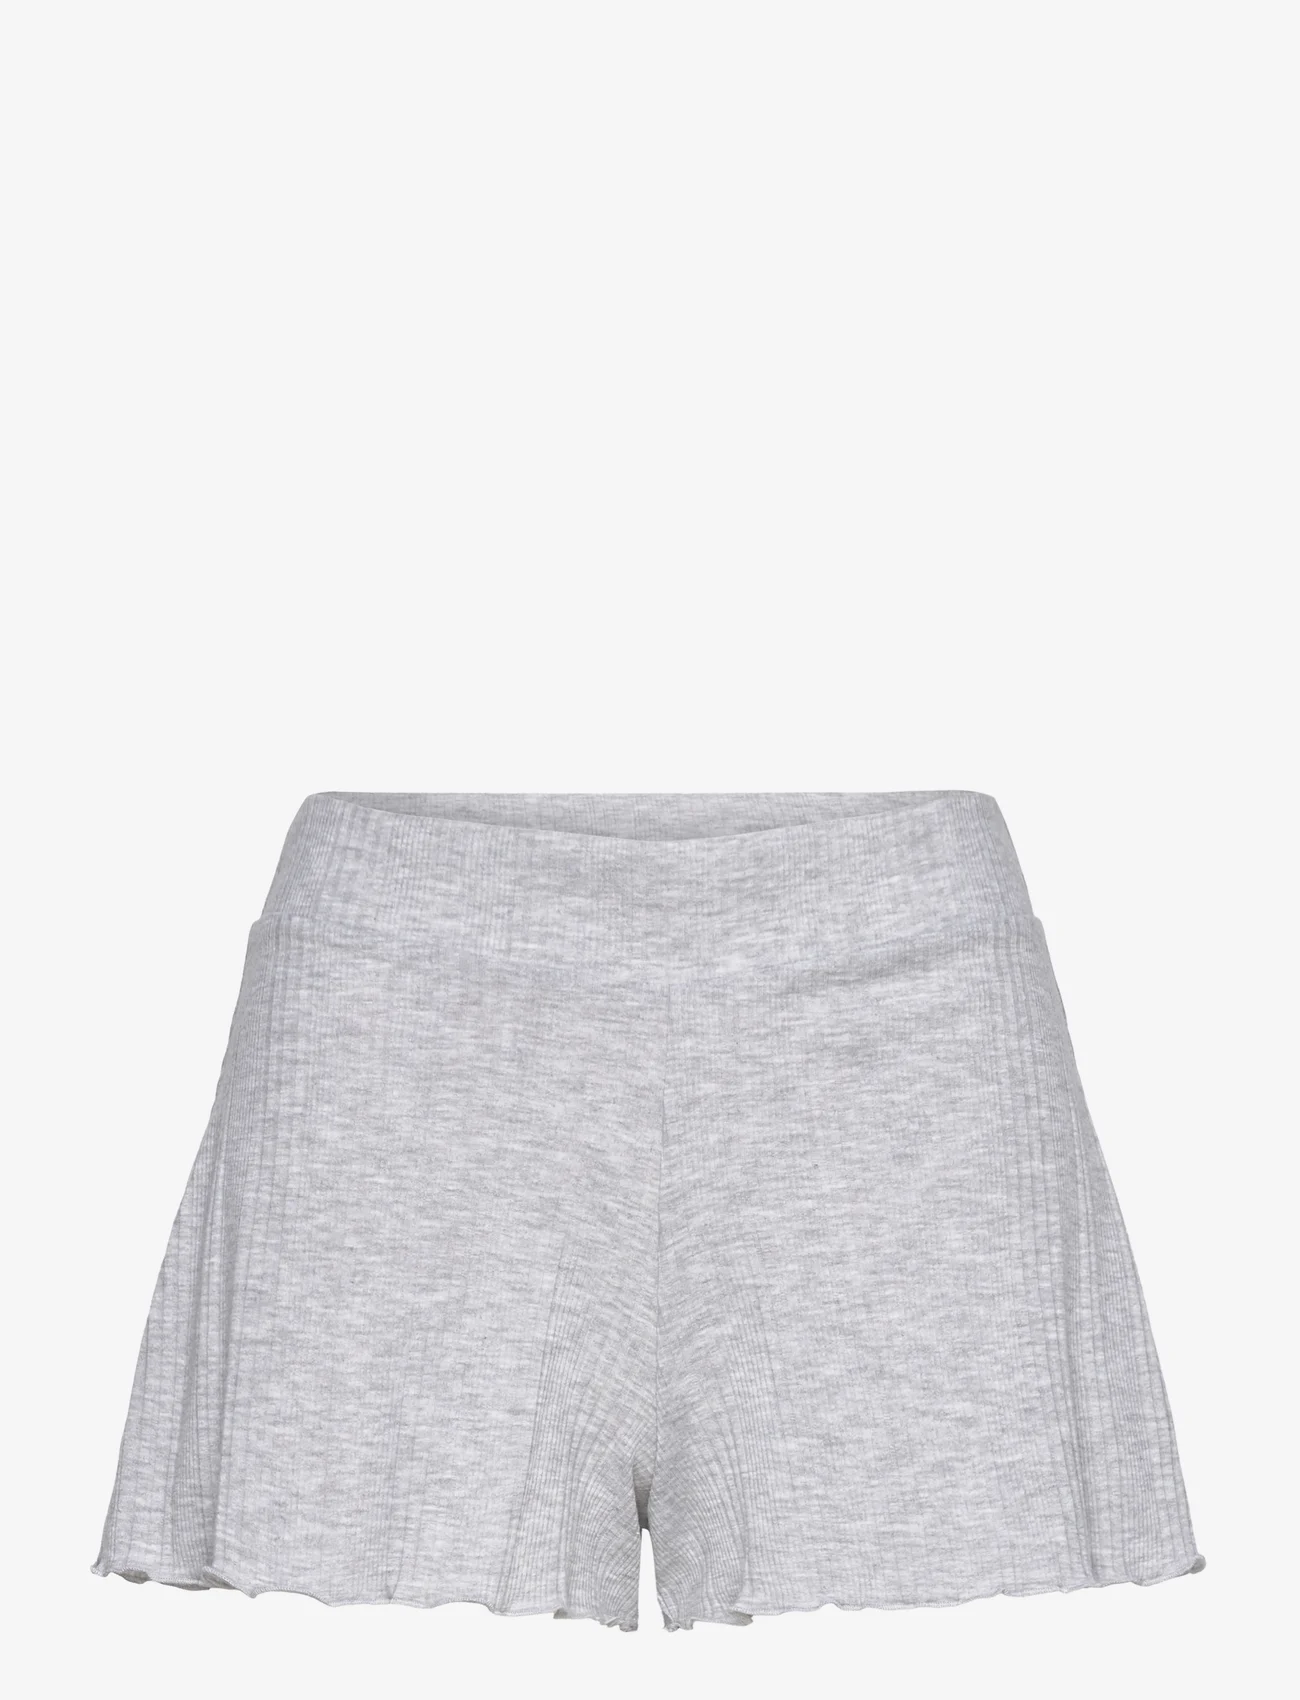 Etam - Coly Short Pyjama Bottom - alhaisimmat hinnat - grey - 0